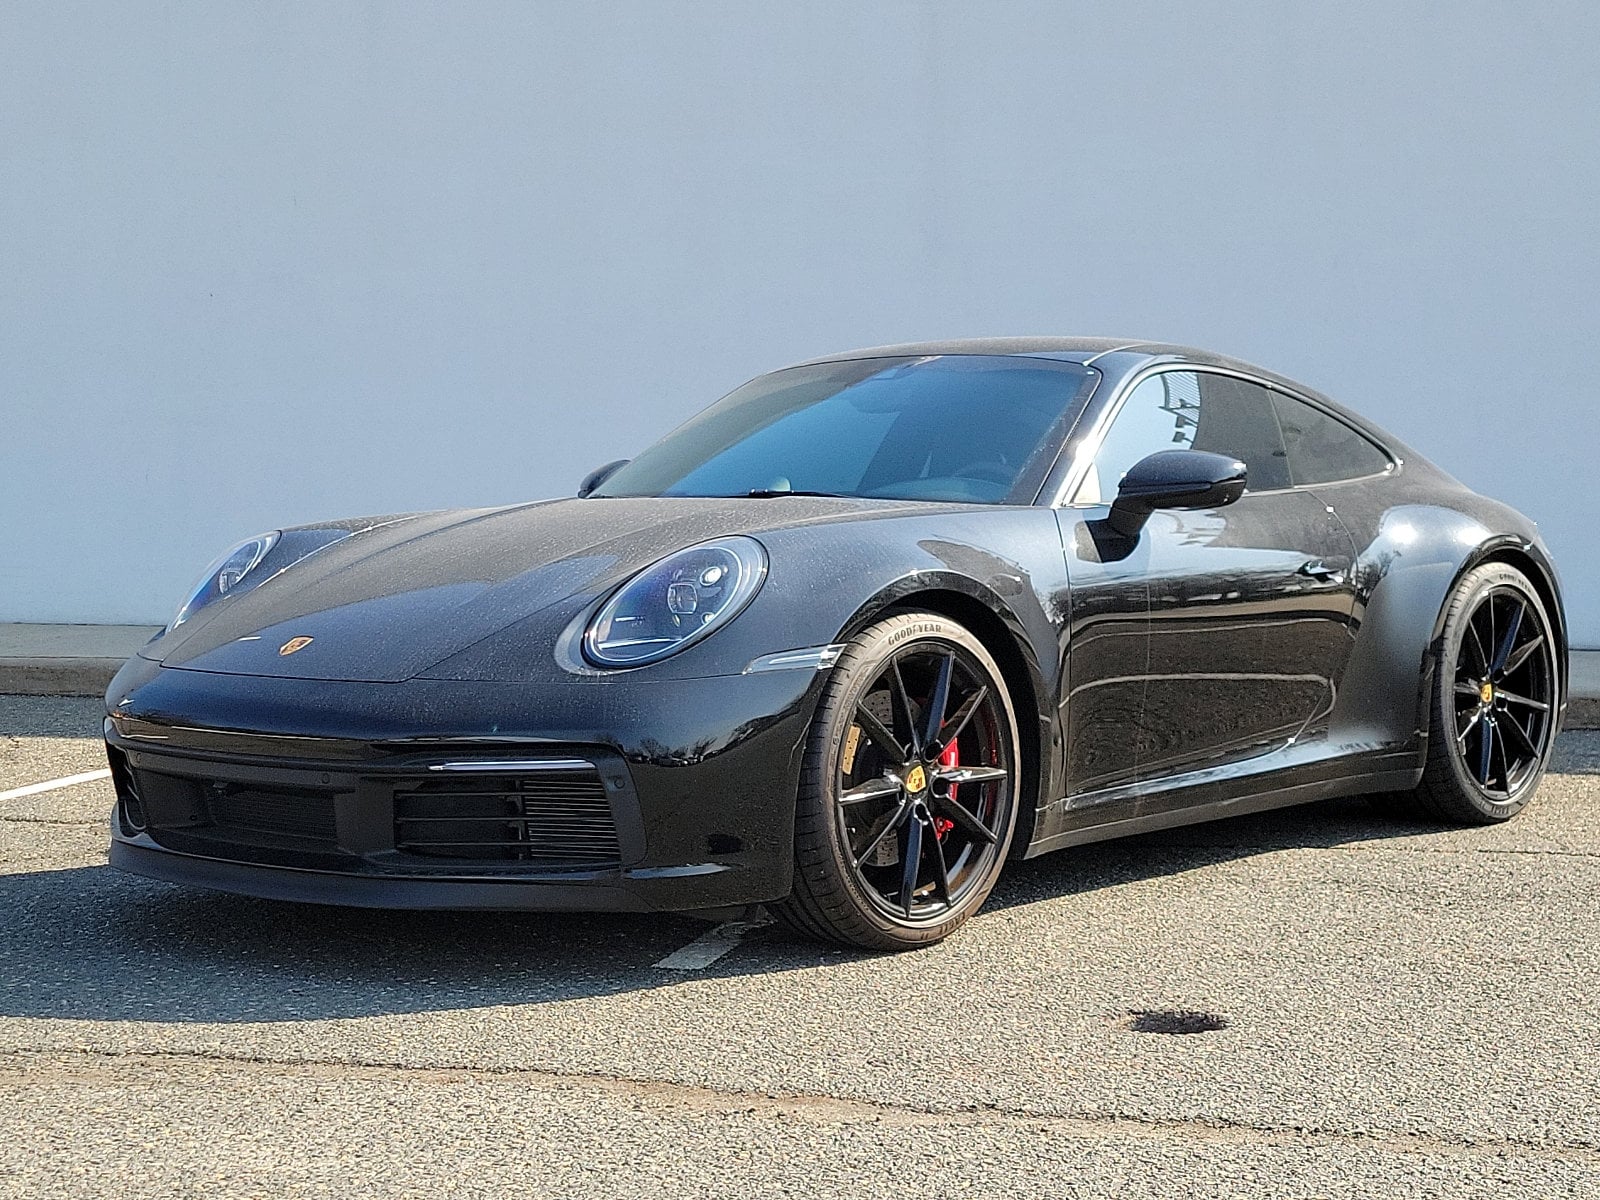 Used 2022 Porsche 911 For Sale at Porsche Flemington | VIN 